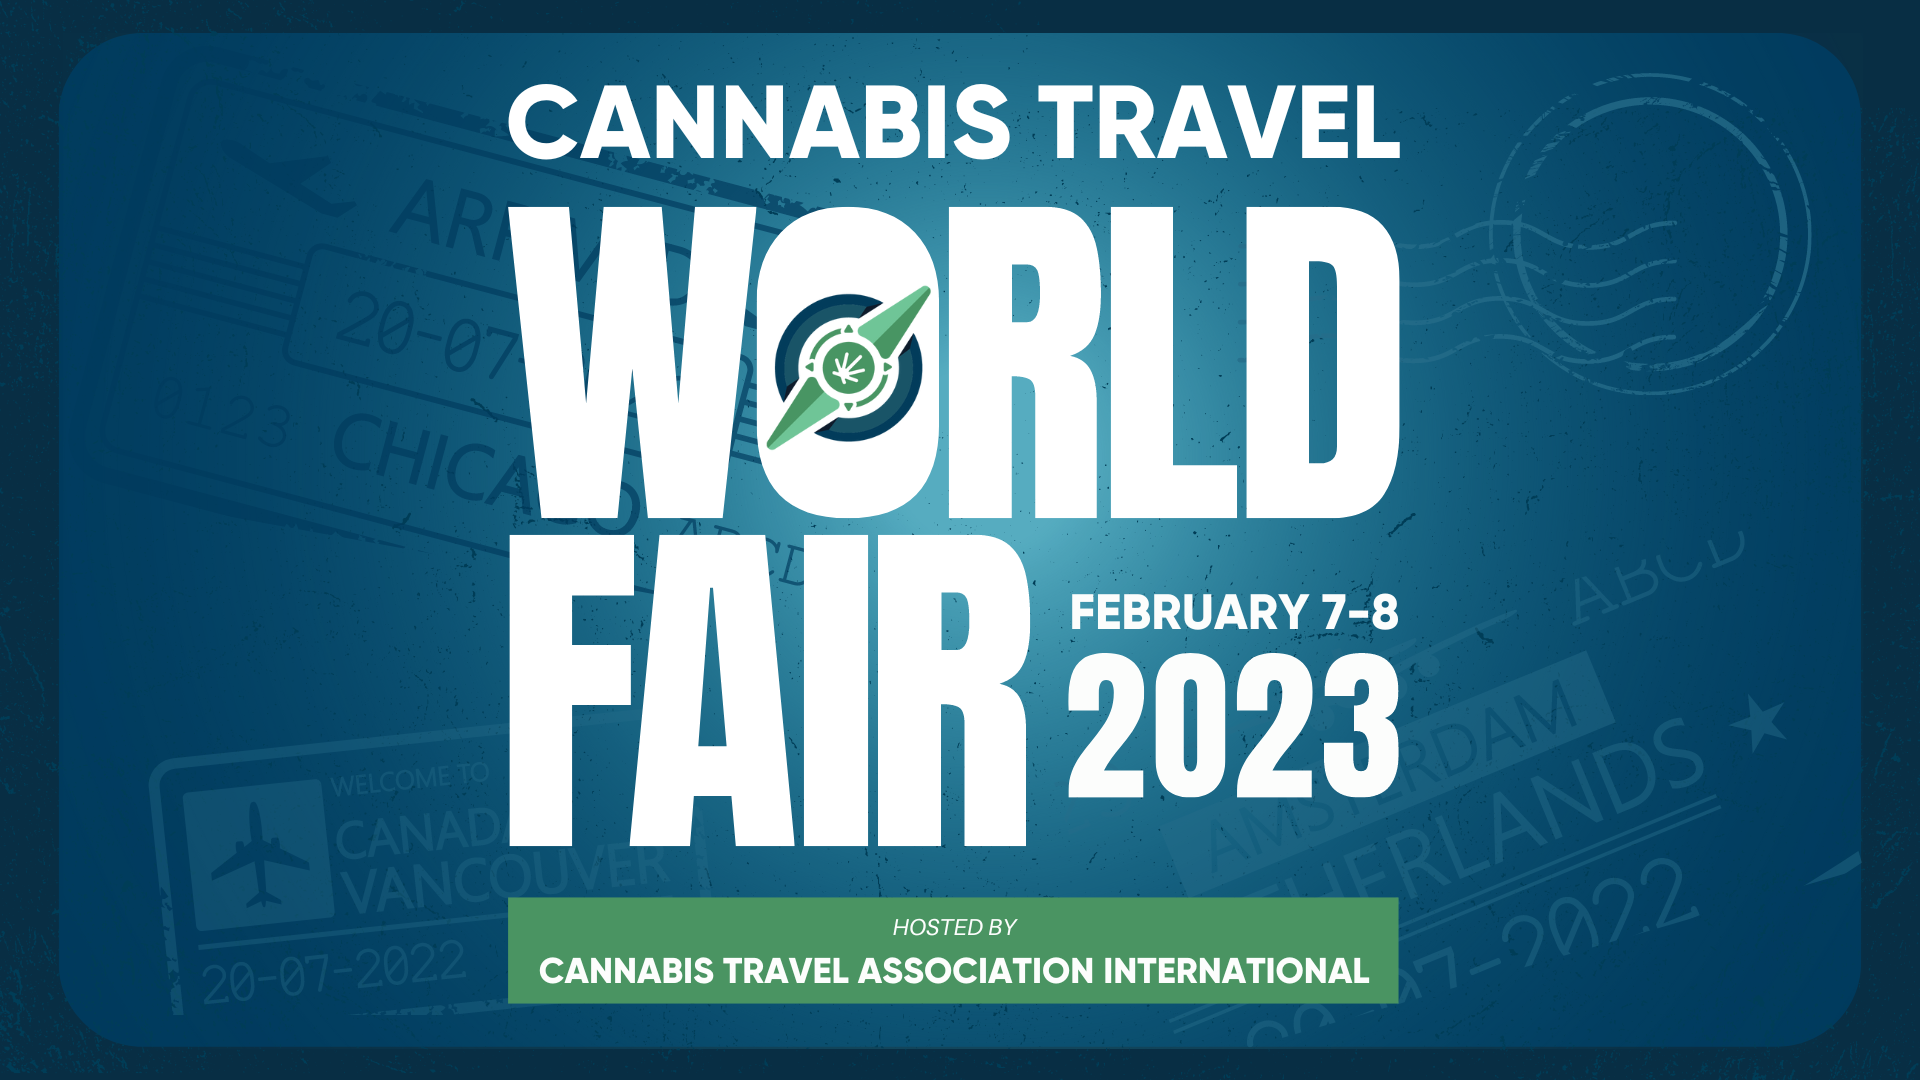 Cannabis Travel World Fair